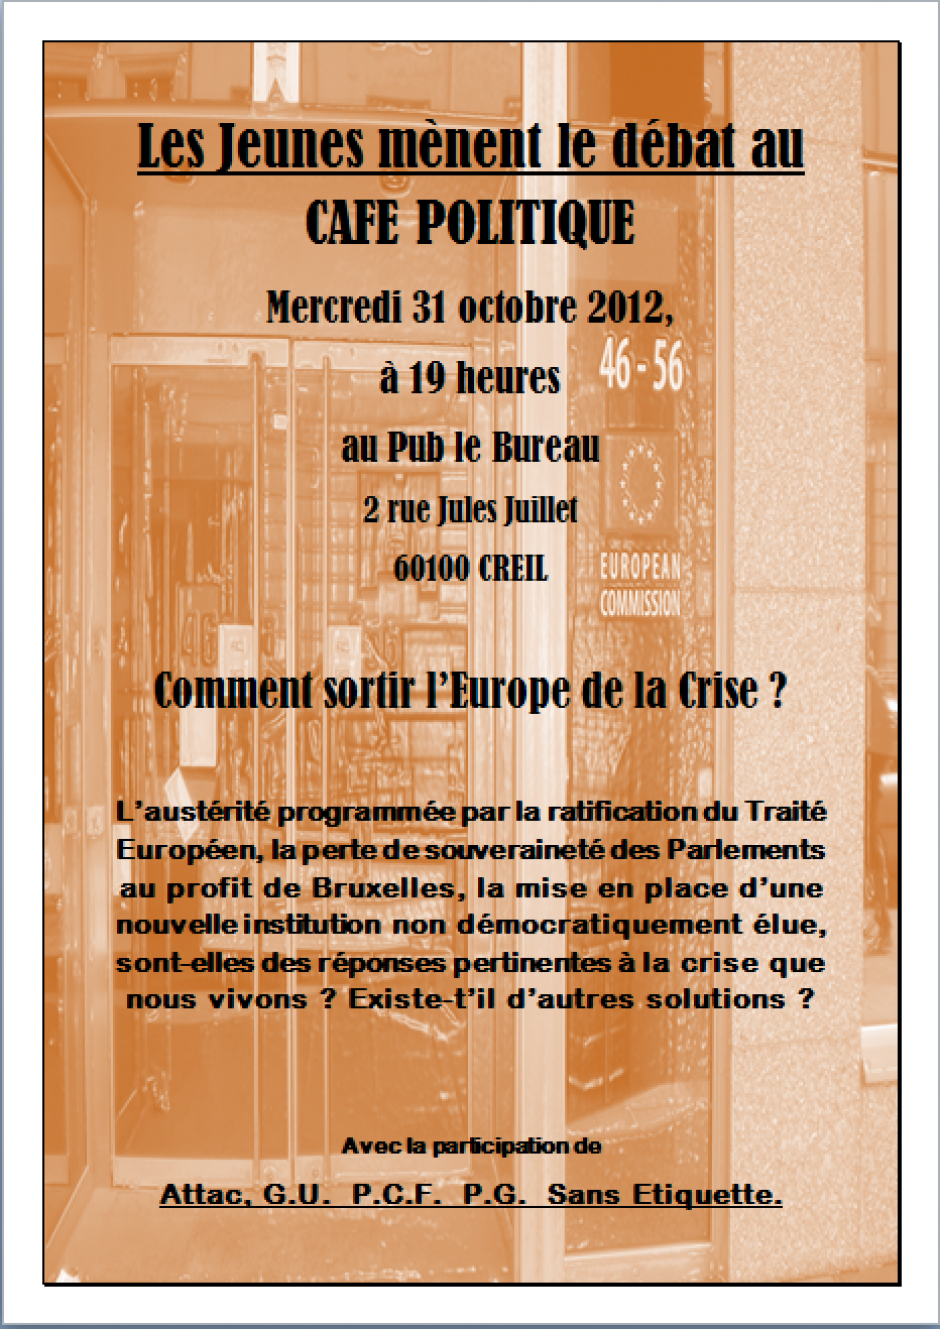 31 octobre, Creil - Café politique (débat mené par les « jeunes »)-Comment sortir l'Europe de la crise ?